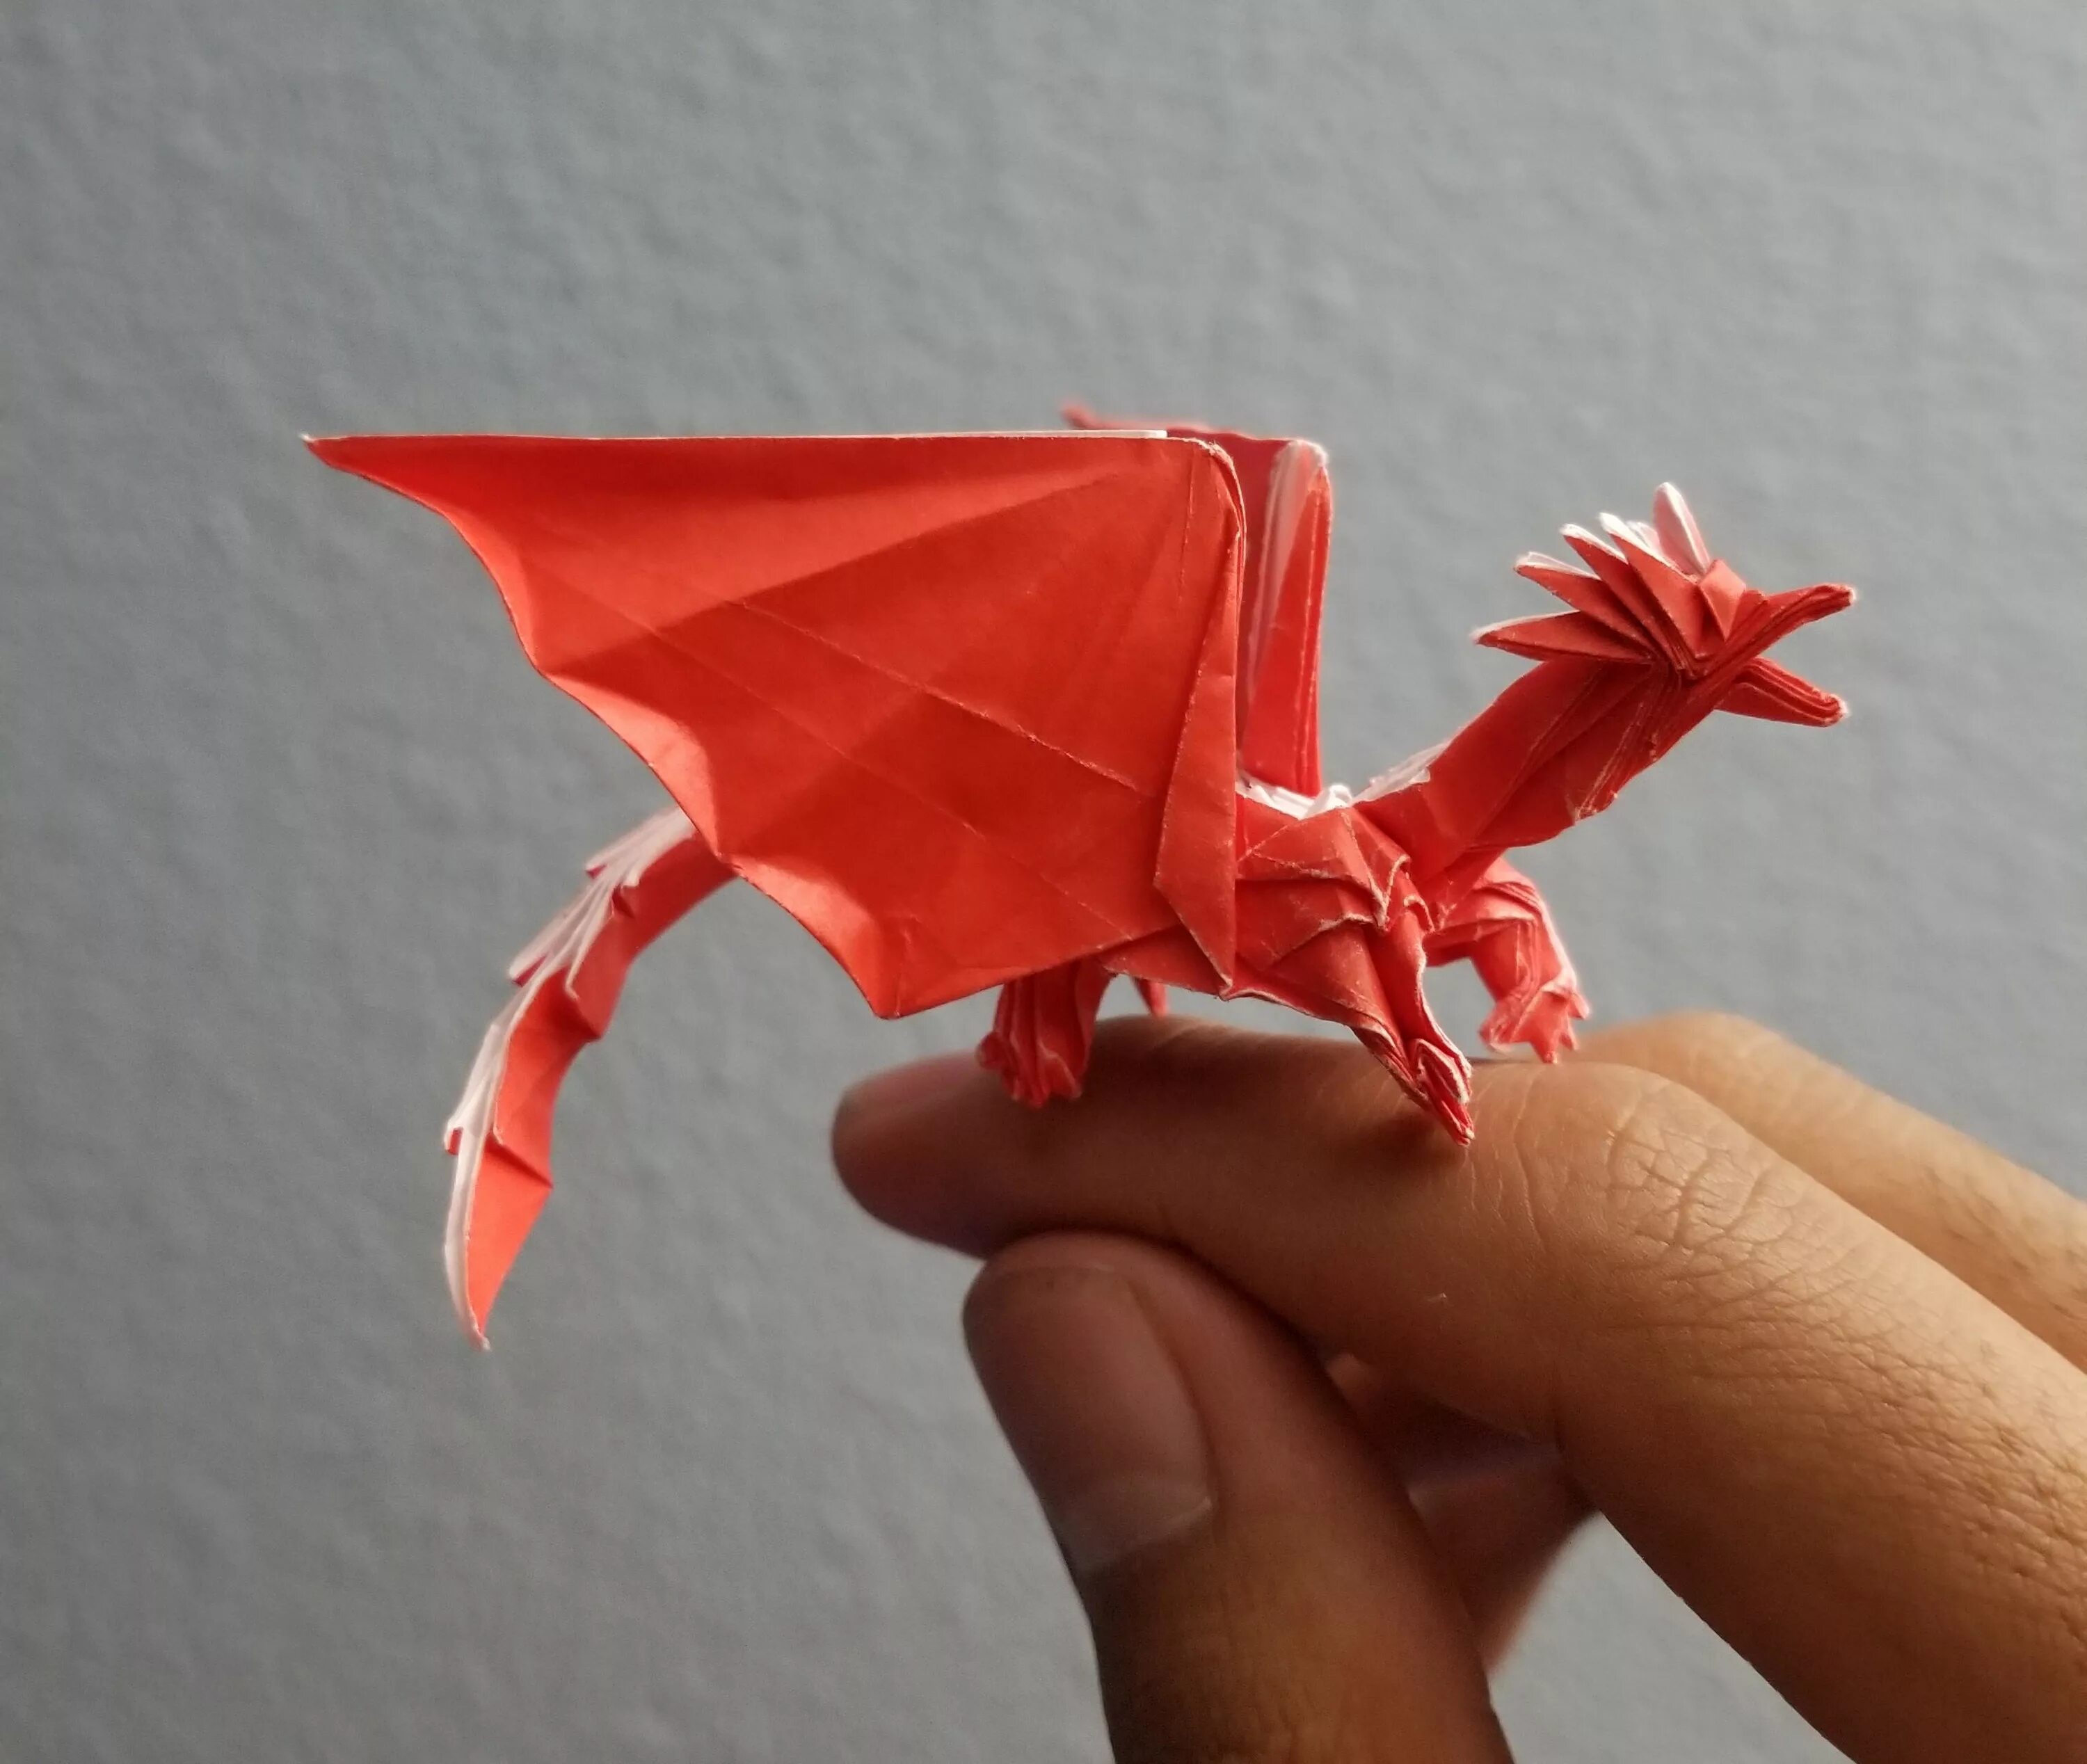 Оригами дракон сатоши Камия. Дракон Корри оригами. Бумажные драконы на руку. Поделка дракон из бумаги. Как сделать маленький оригами